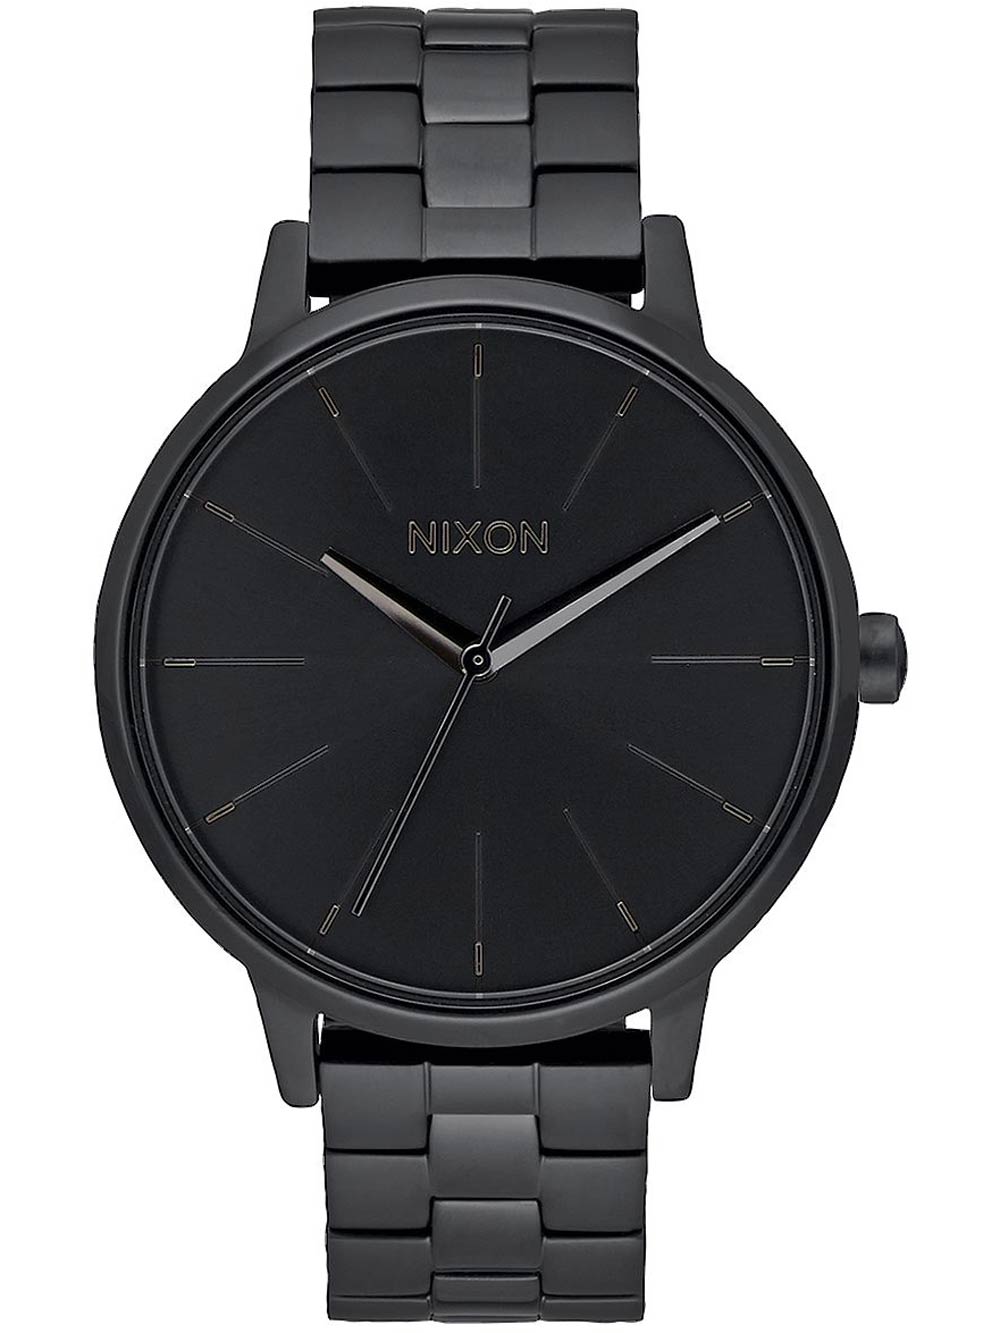 NIXON A099-001 Kensington All Black 37mm 5ATM